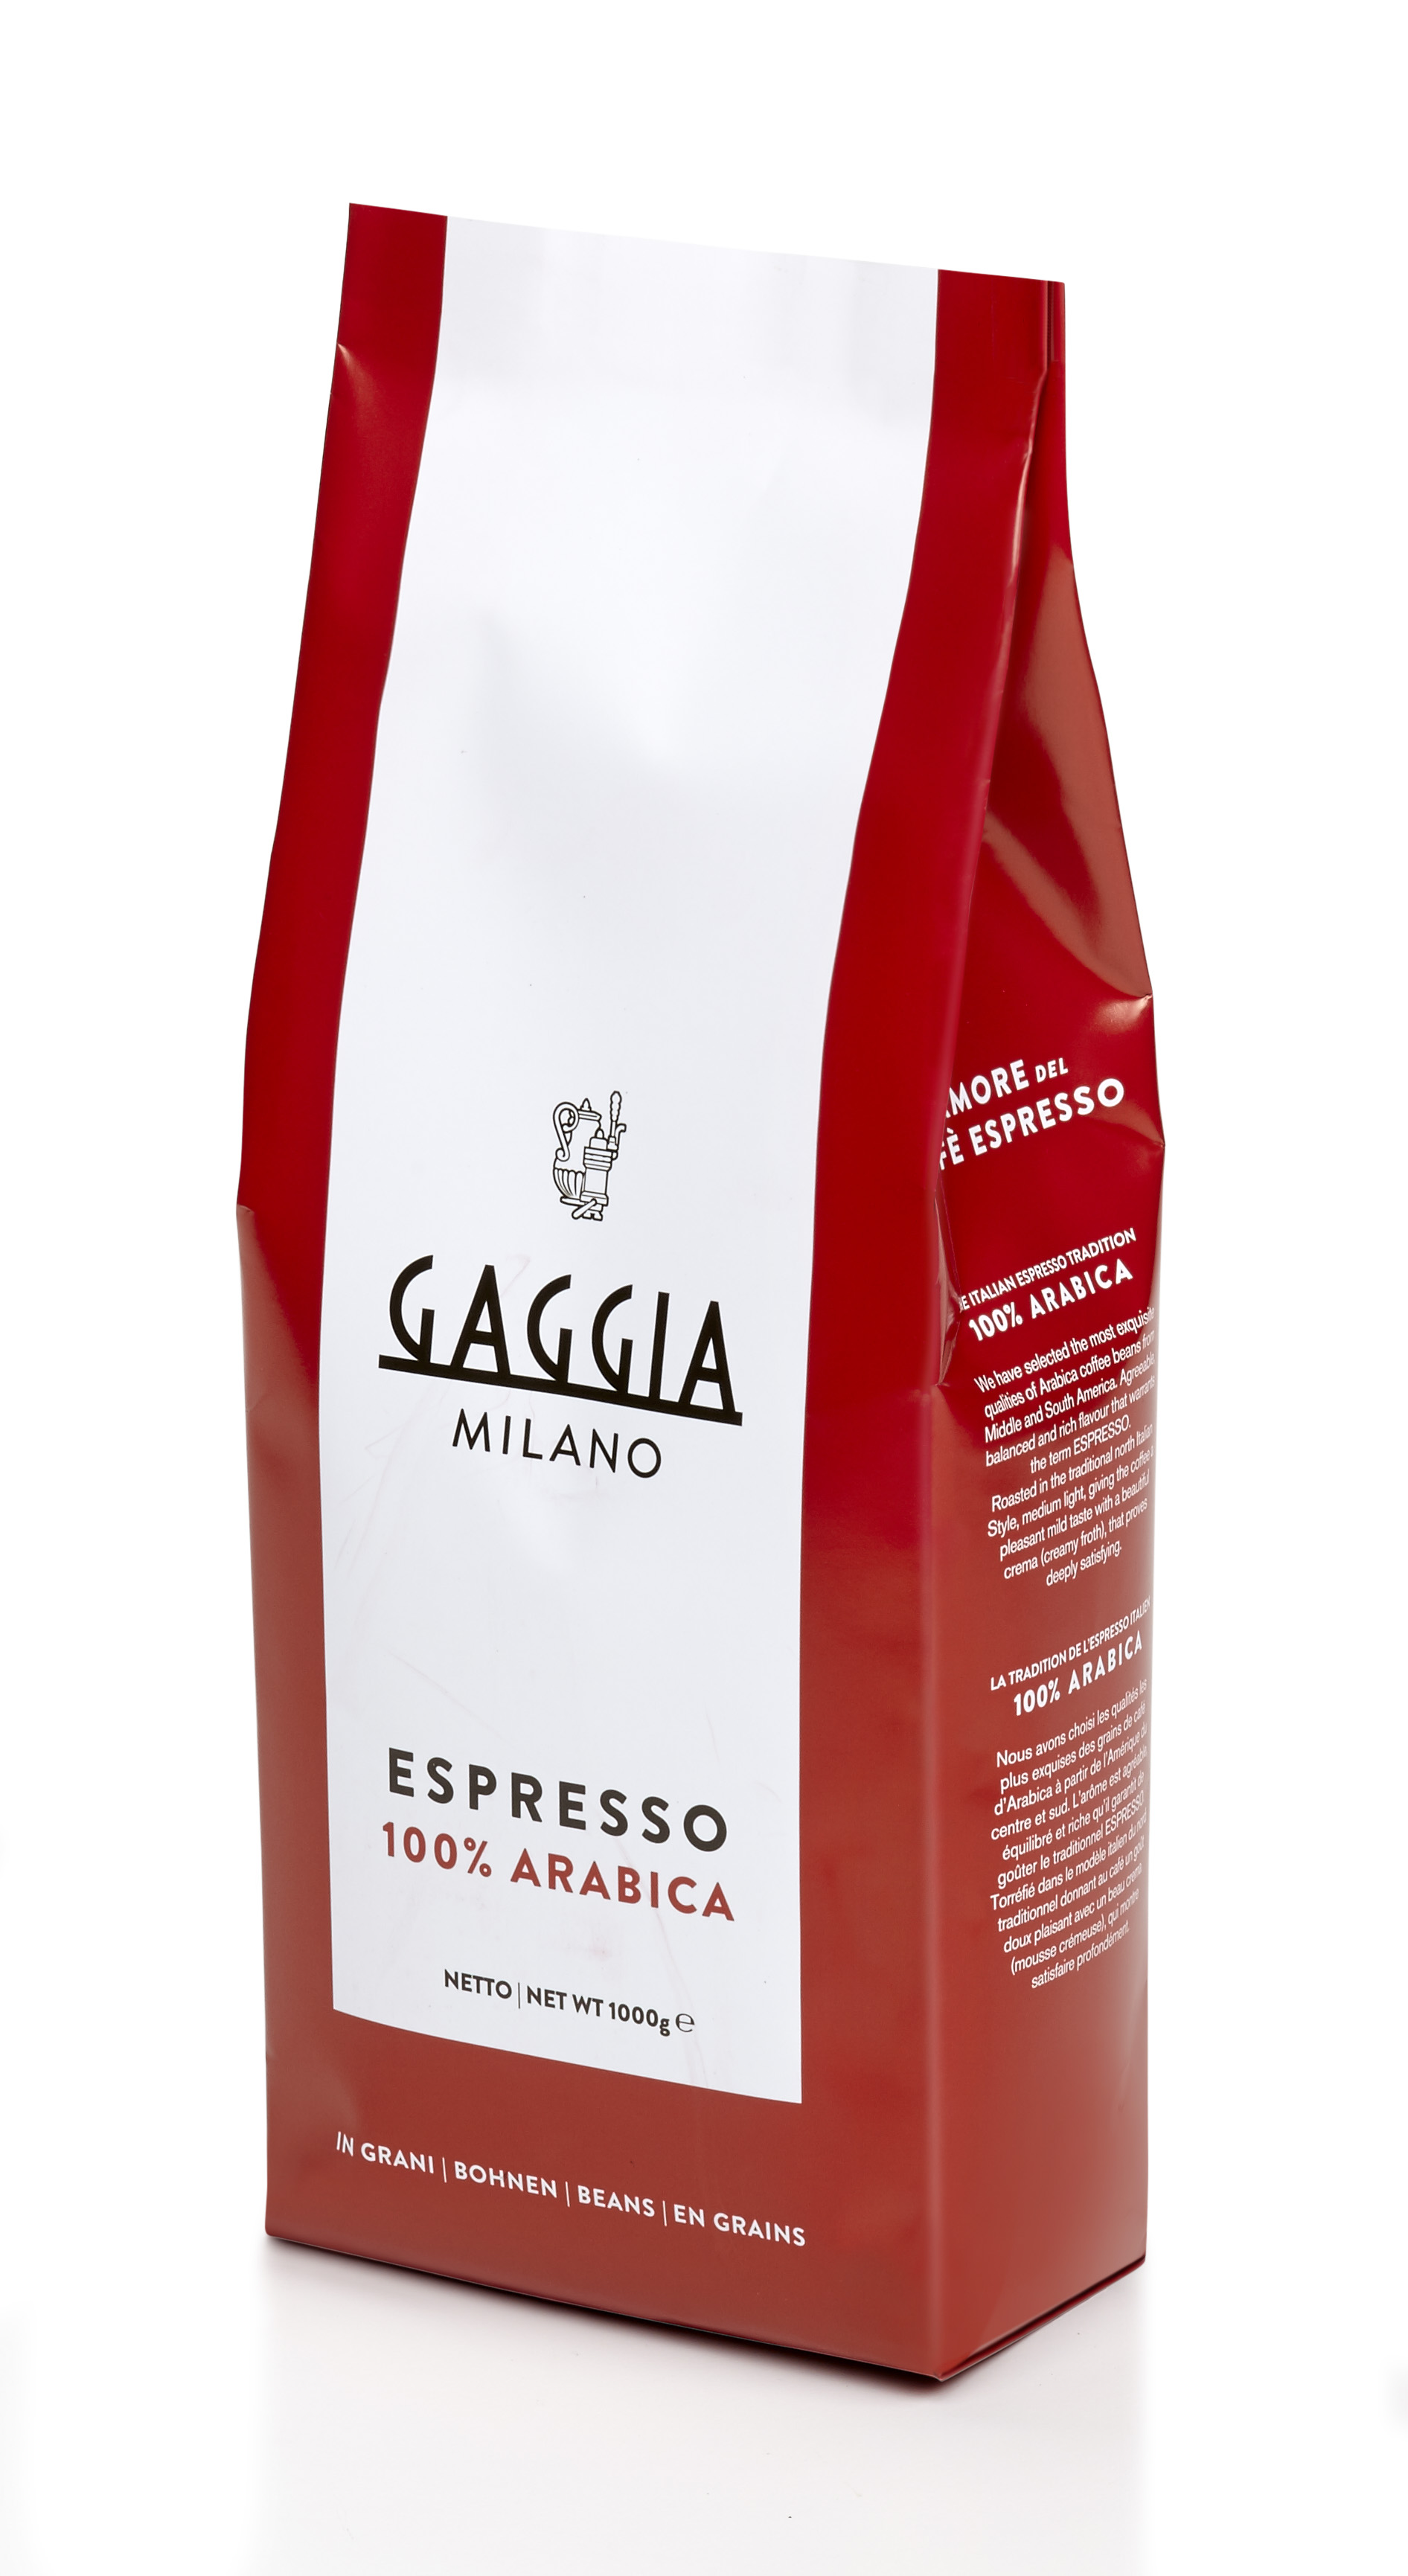 Gaggia Espresso 100% Arabica Kaffee 1kg